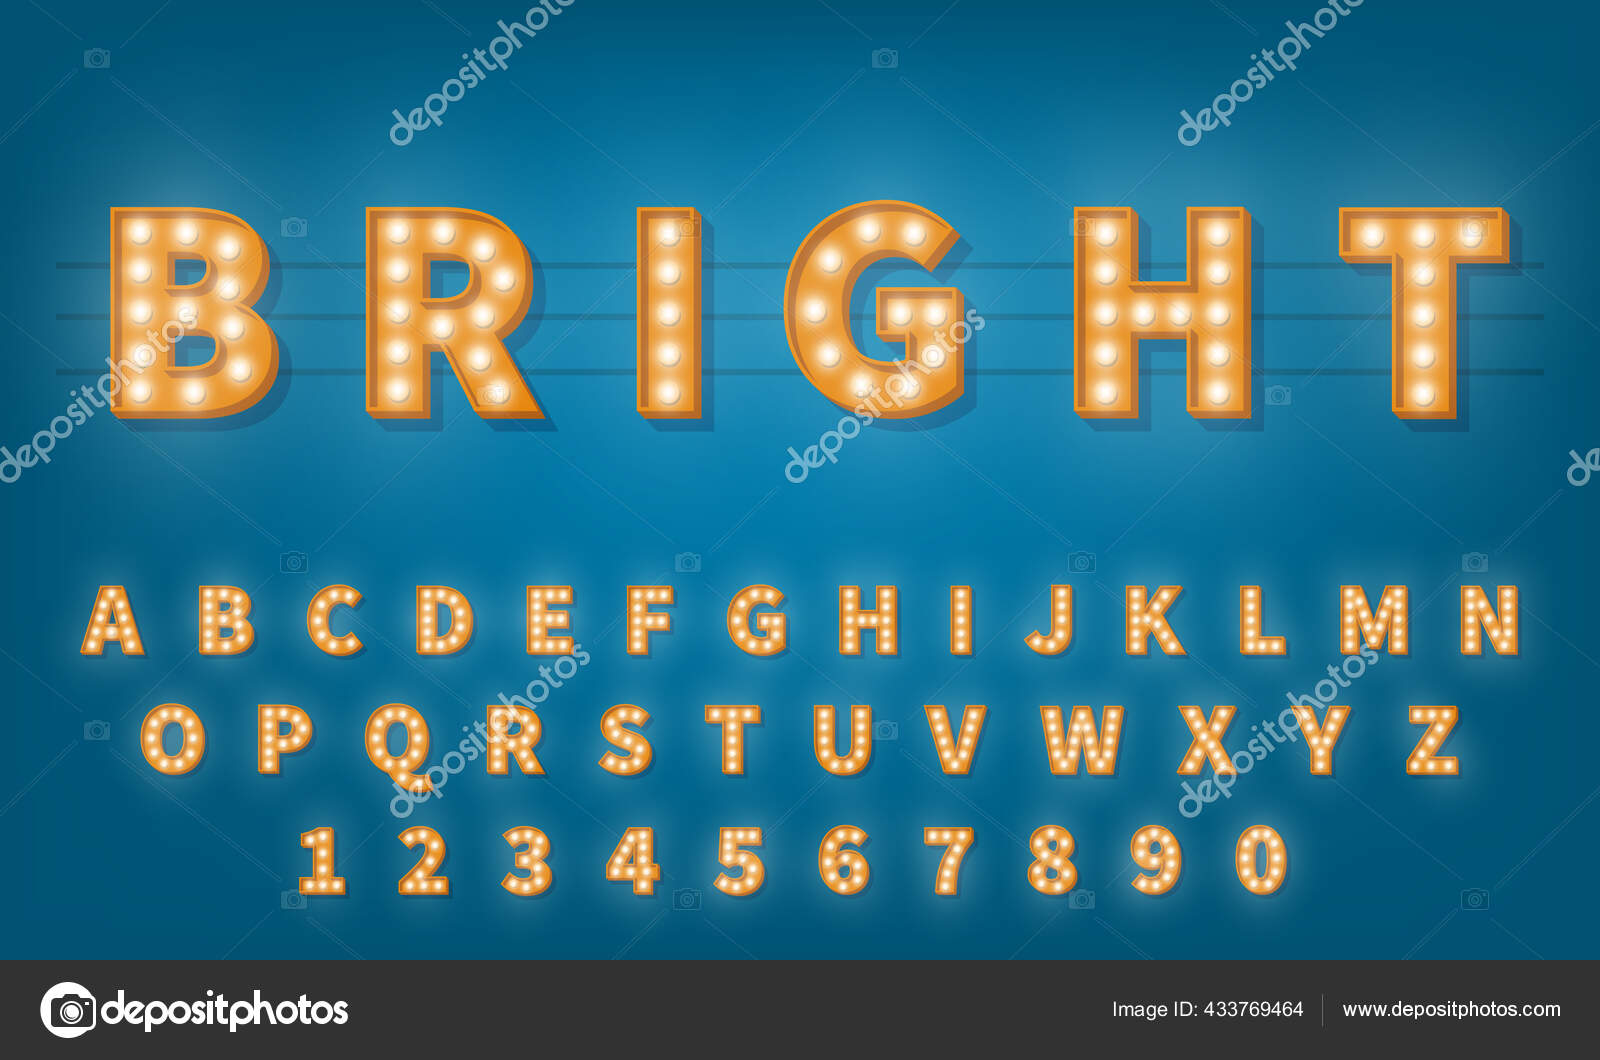 voordelig microscopisch transactie Light bulb font Vector Art Stock Images | Depositphotos